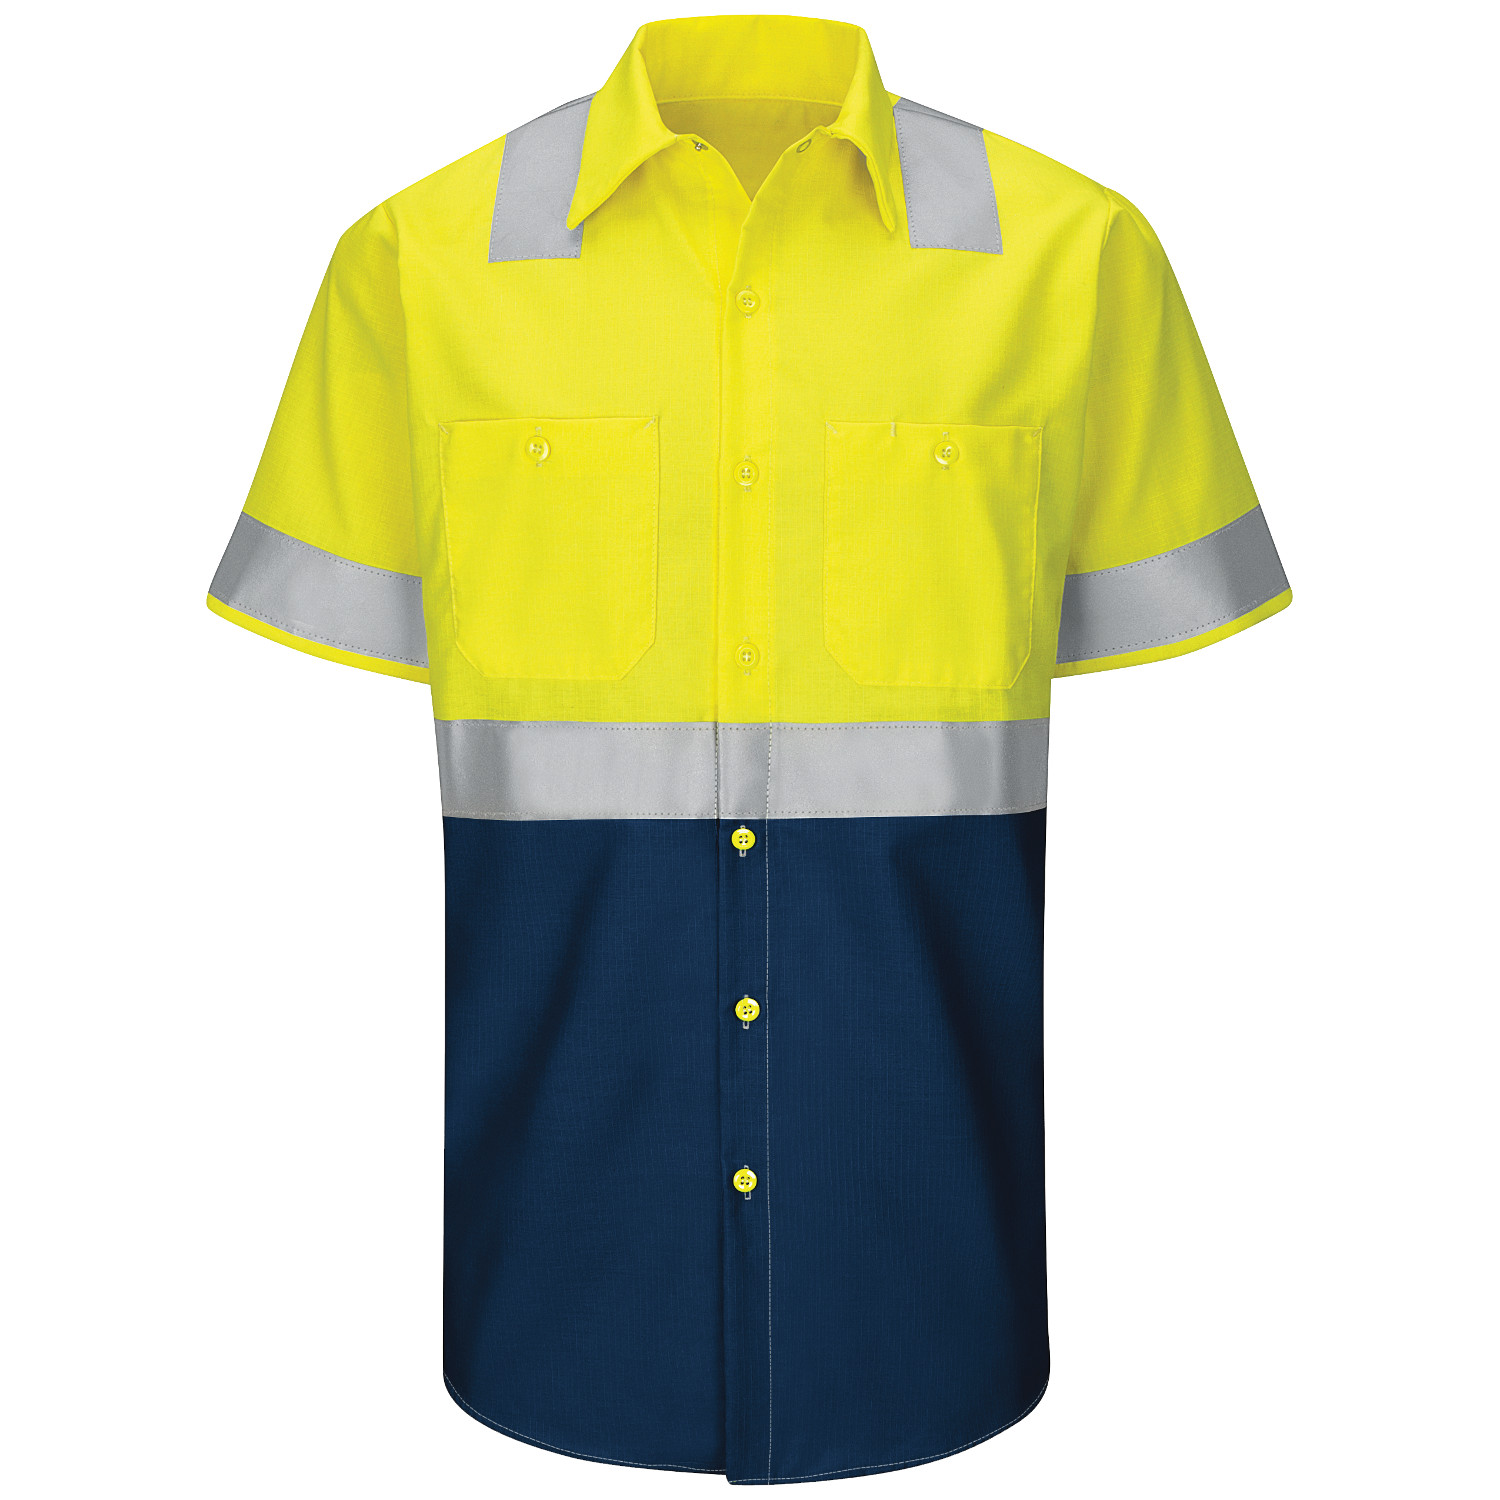 Red Kap Ripstop Class 2 Colorblock Short Sleeve Work Shirt (Safety Green/Navy)